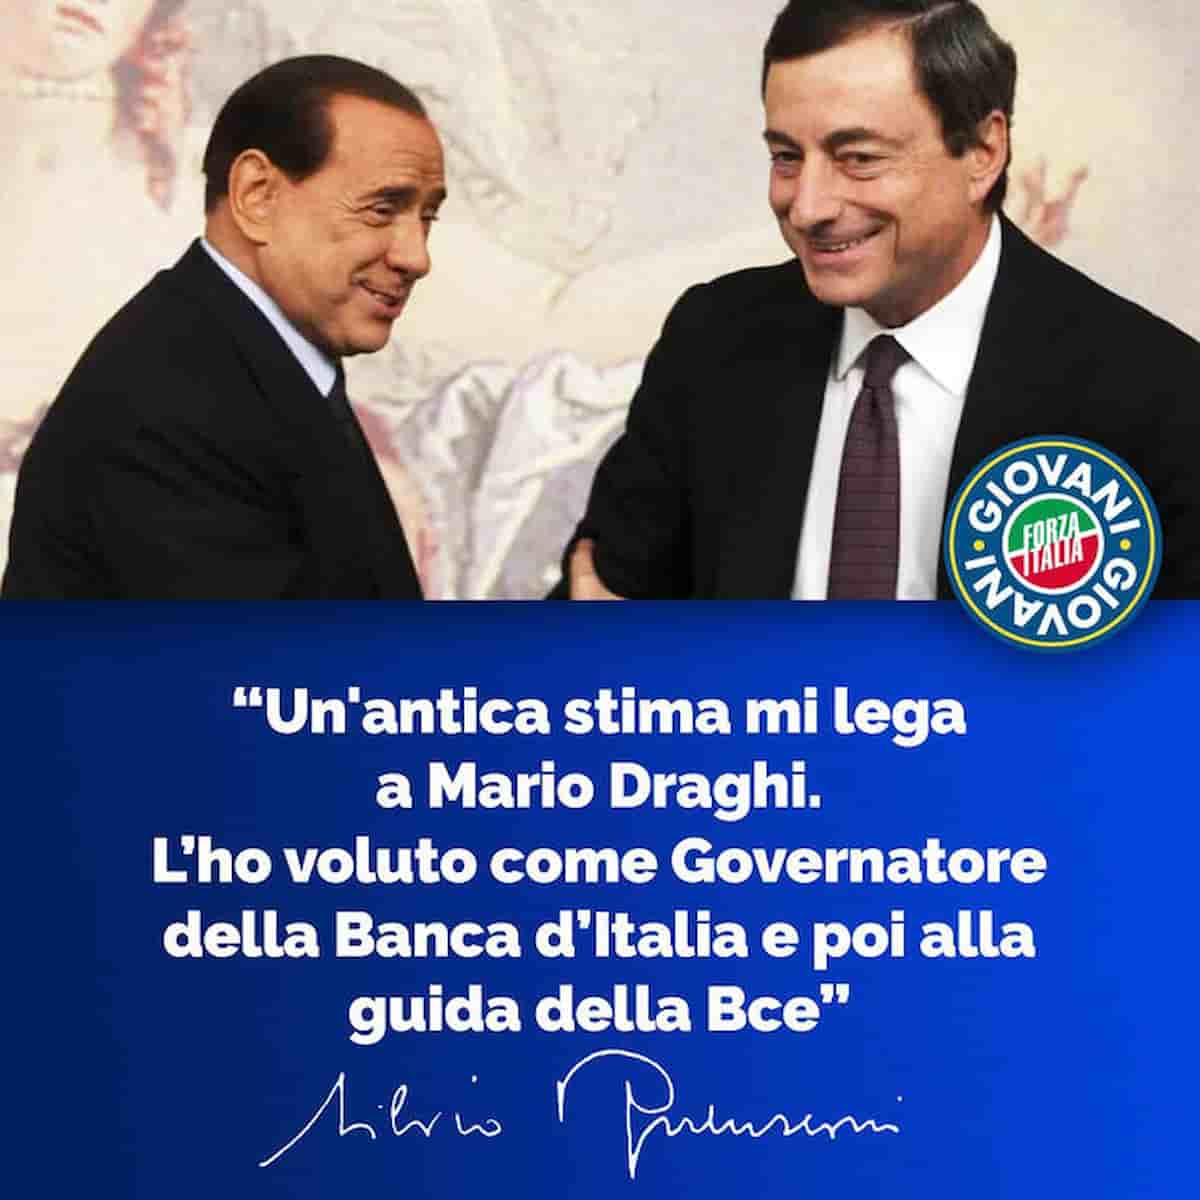 Borsino Quirinale: sei nomi e un outsider, Draghi o Berlusconi? Miss o mister X? Scelta incertissima